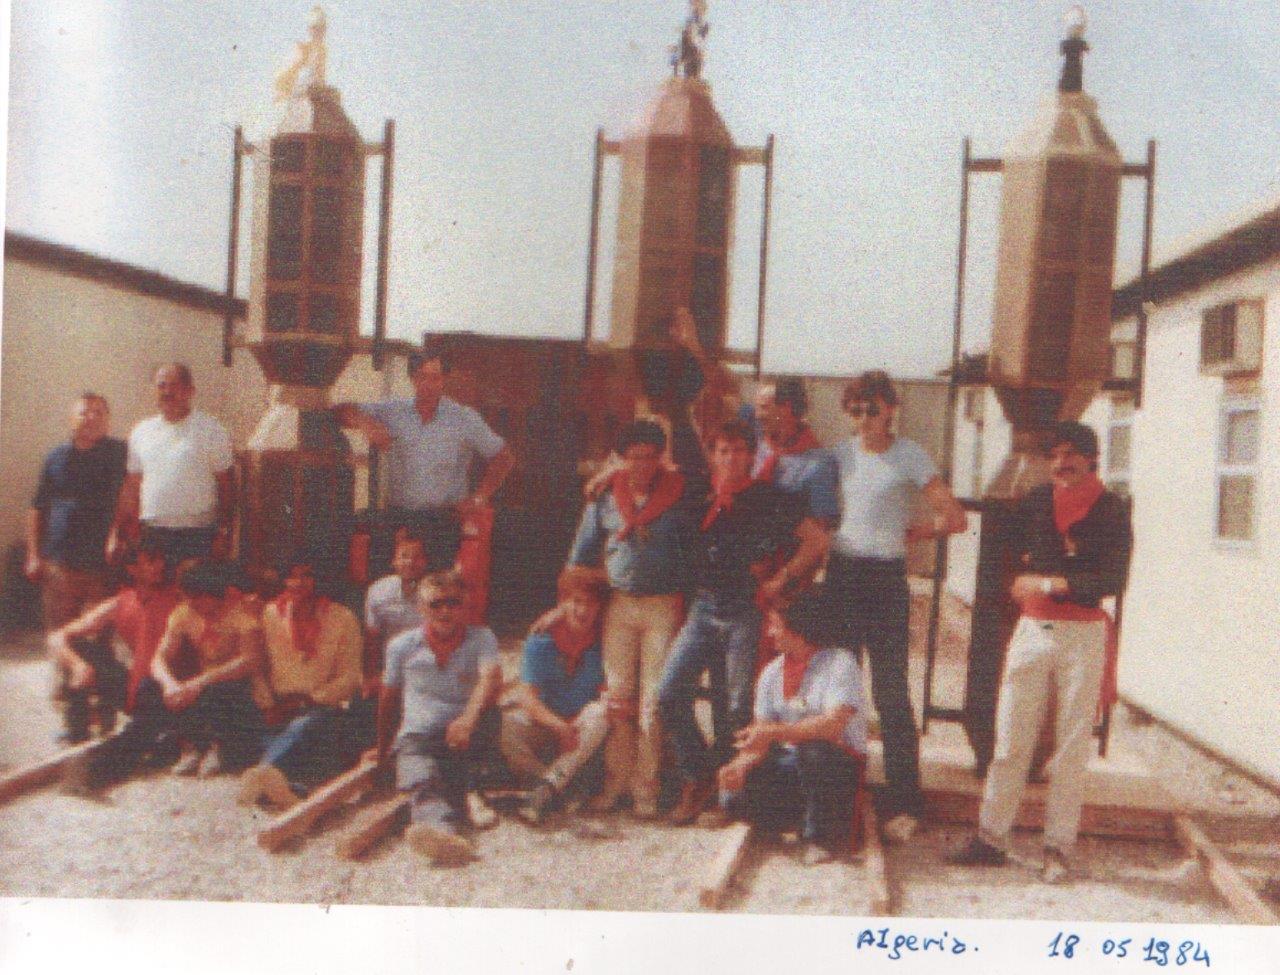 1984 Algeria. Giovanni Barbacci, Massimo e Giuliano Mauri